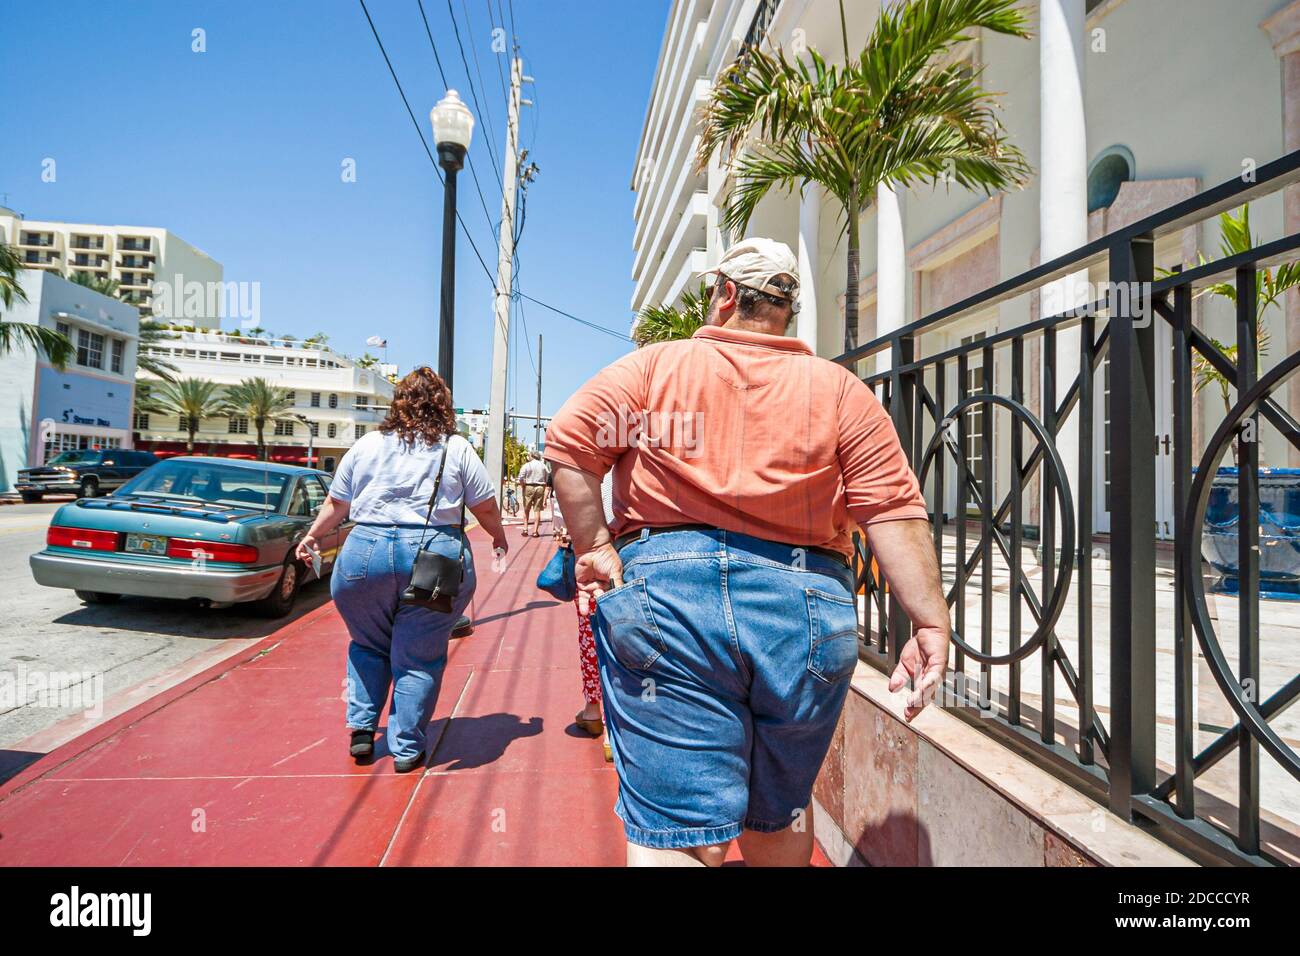 Miami Beach Florida, Ocean Drive, sovrappeso obese obesità grasso pesante plump rotund stout, uomo donna donna coppia a piedi, Foto Stock